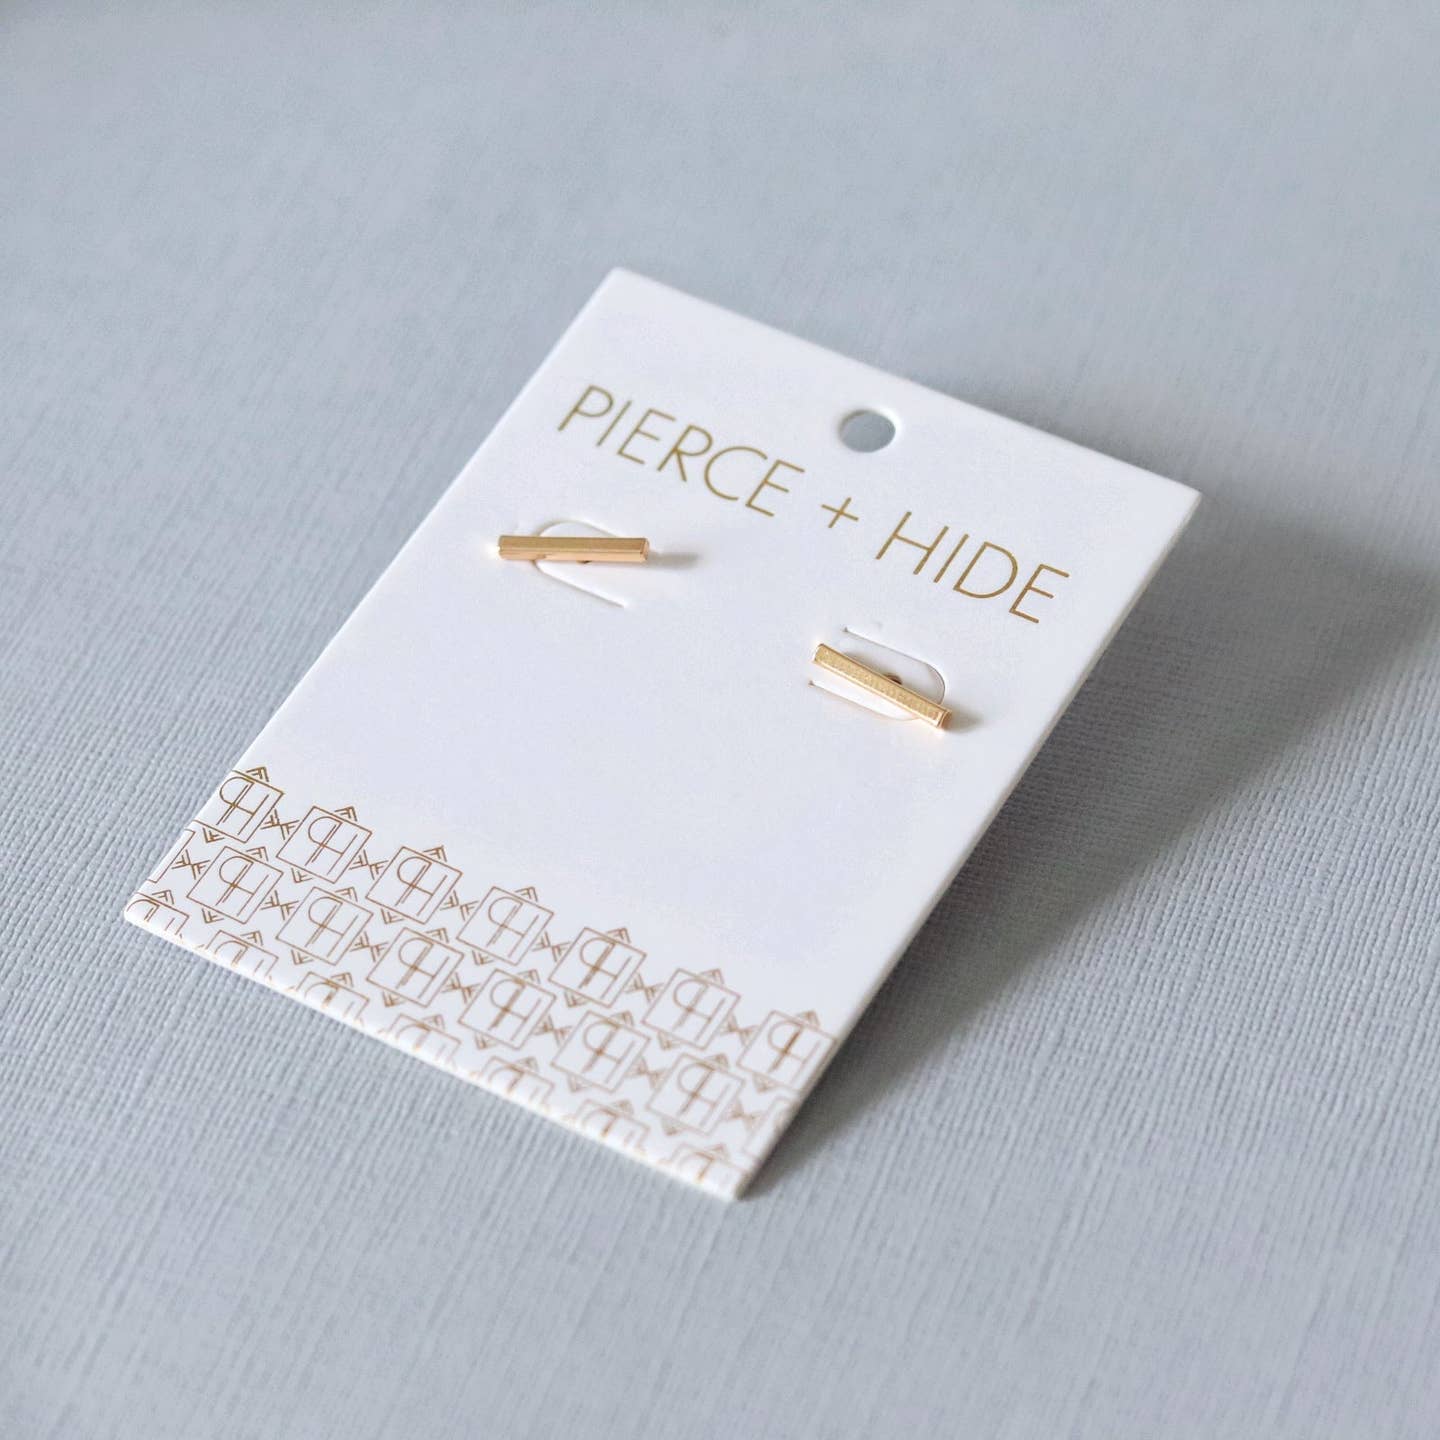 Pierce + Hide: Gold Bar Stud Earrings